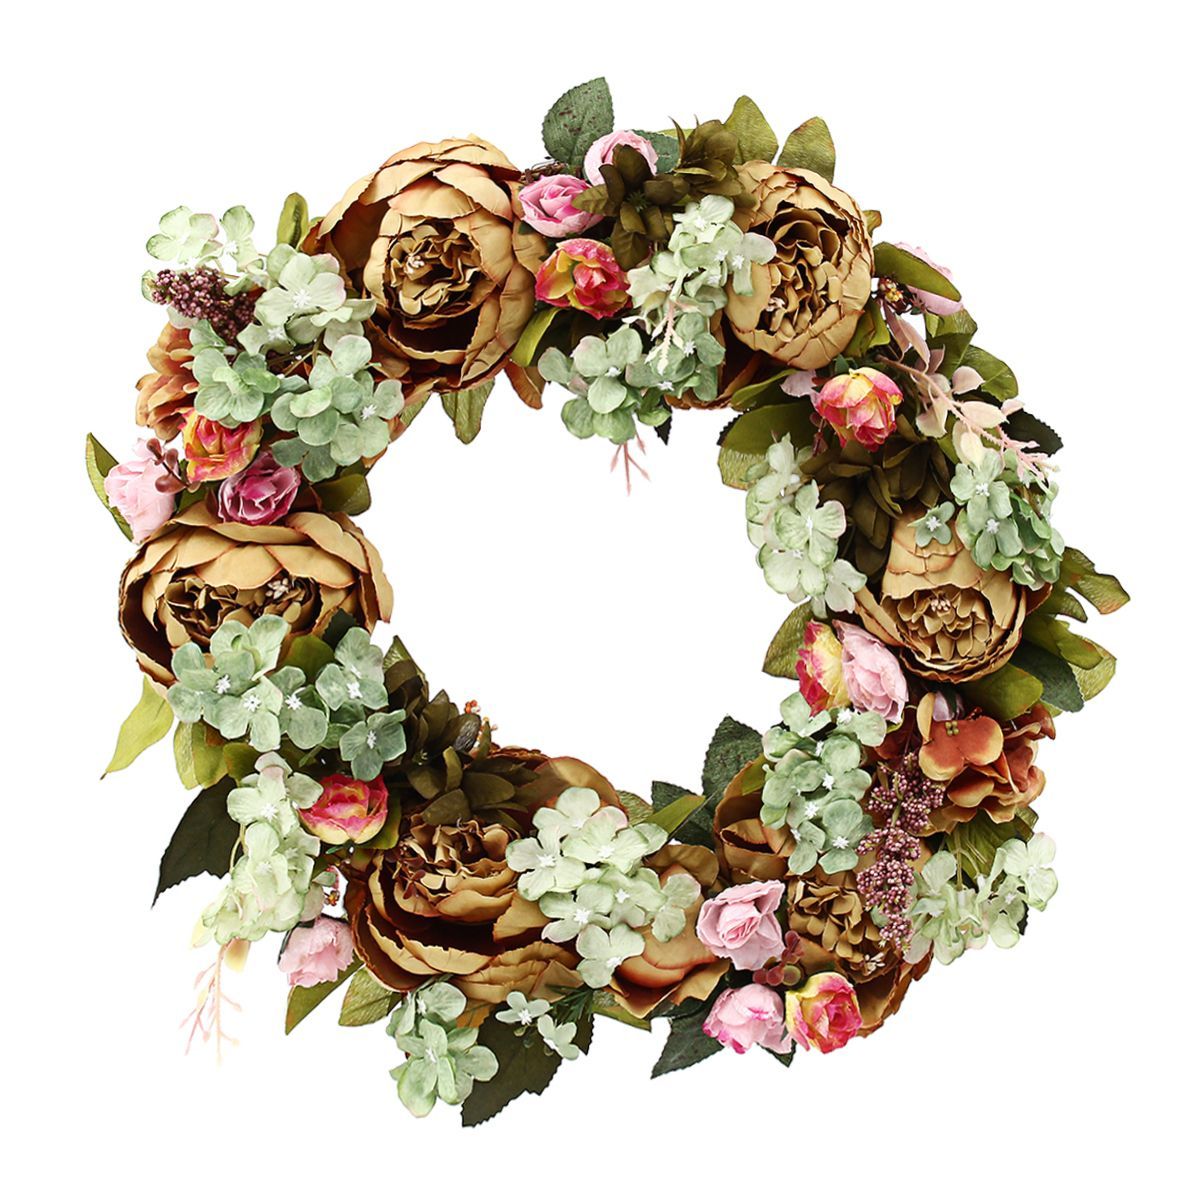 Artificial-Flowers-Garland-European-Lintel-Wall-Decorative-Flower-Door-Wreath-for-Wedding-Home-Chris-1528178